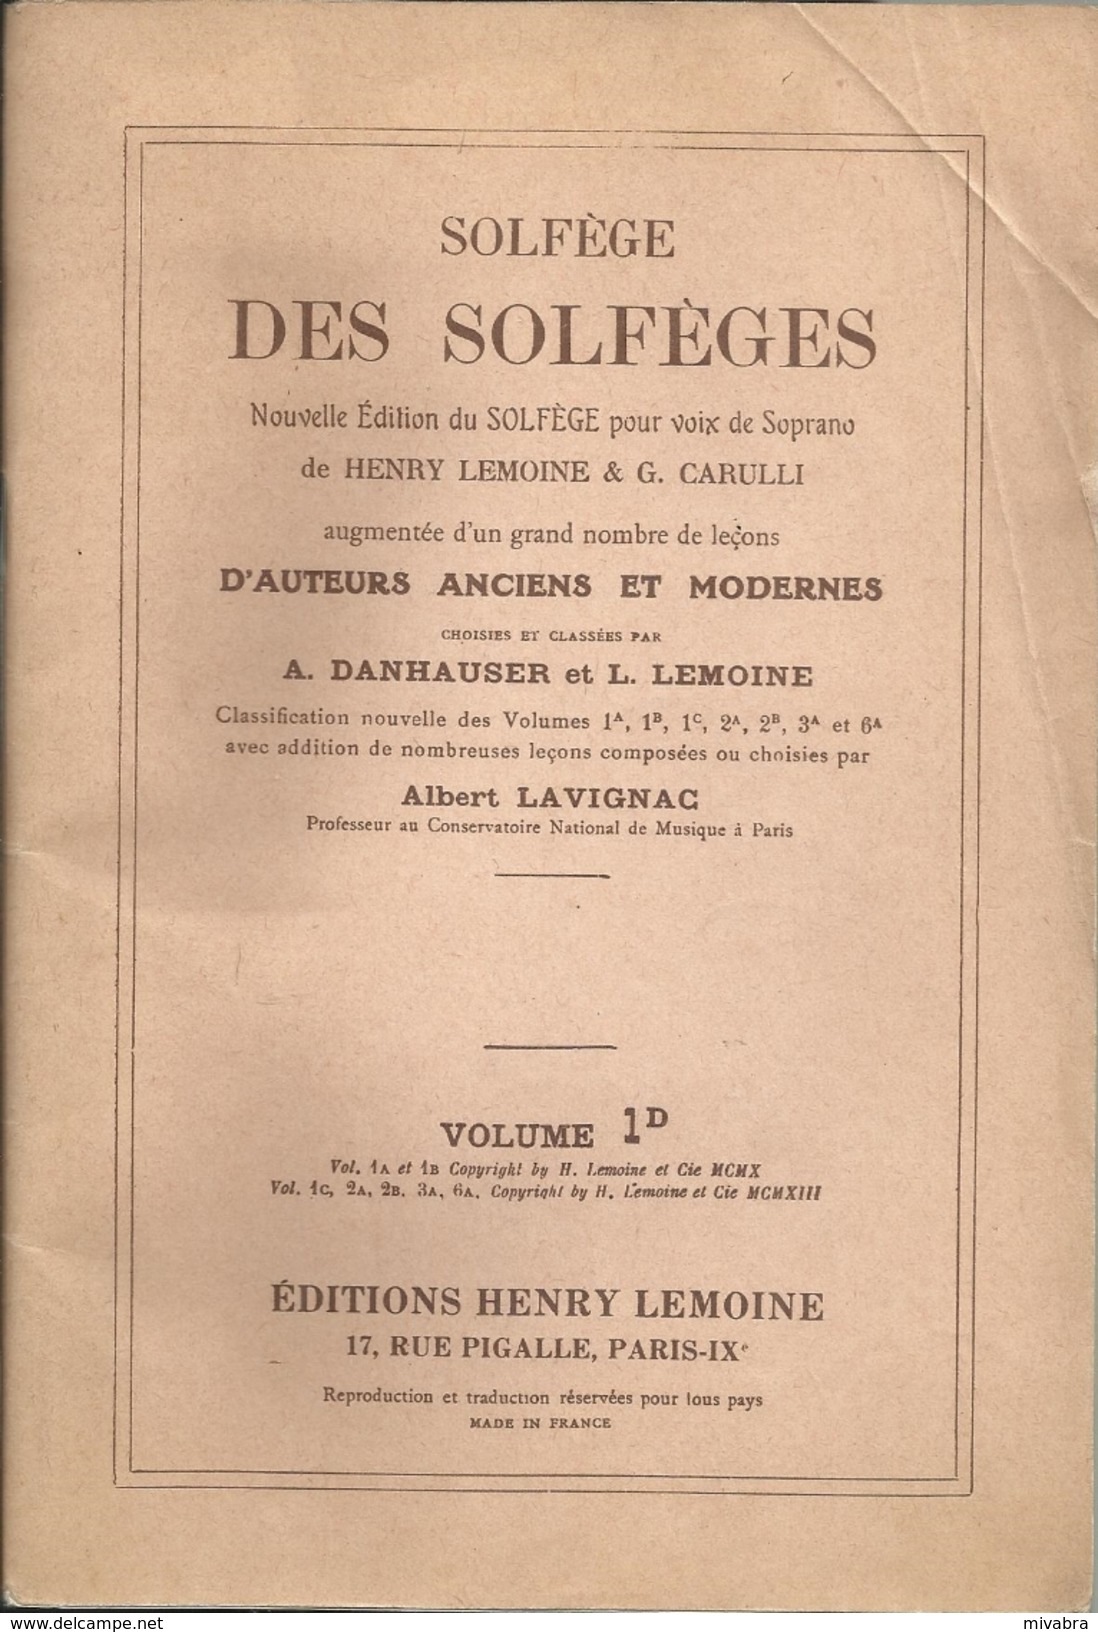 Solfege Des Solfeges: Nouvelle Edition Du Solfege Pour Voix De Soprano Grand Nombre De Leçons Volume 1D - Scholingsboek